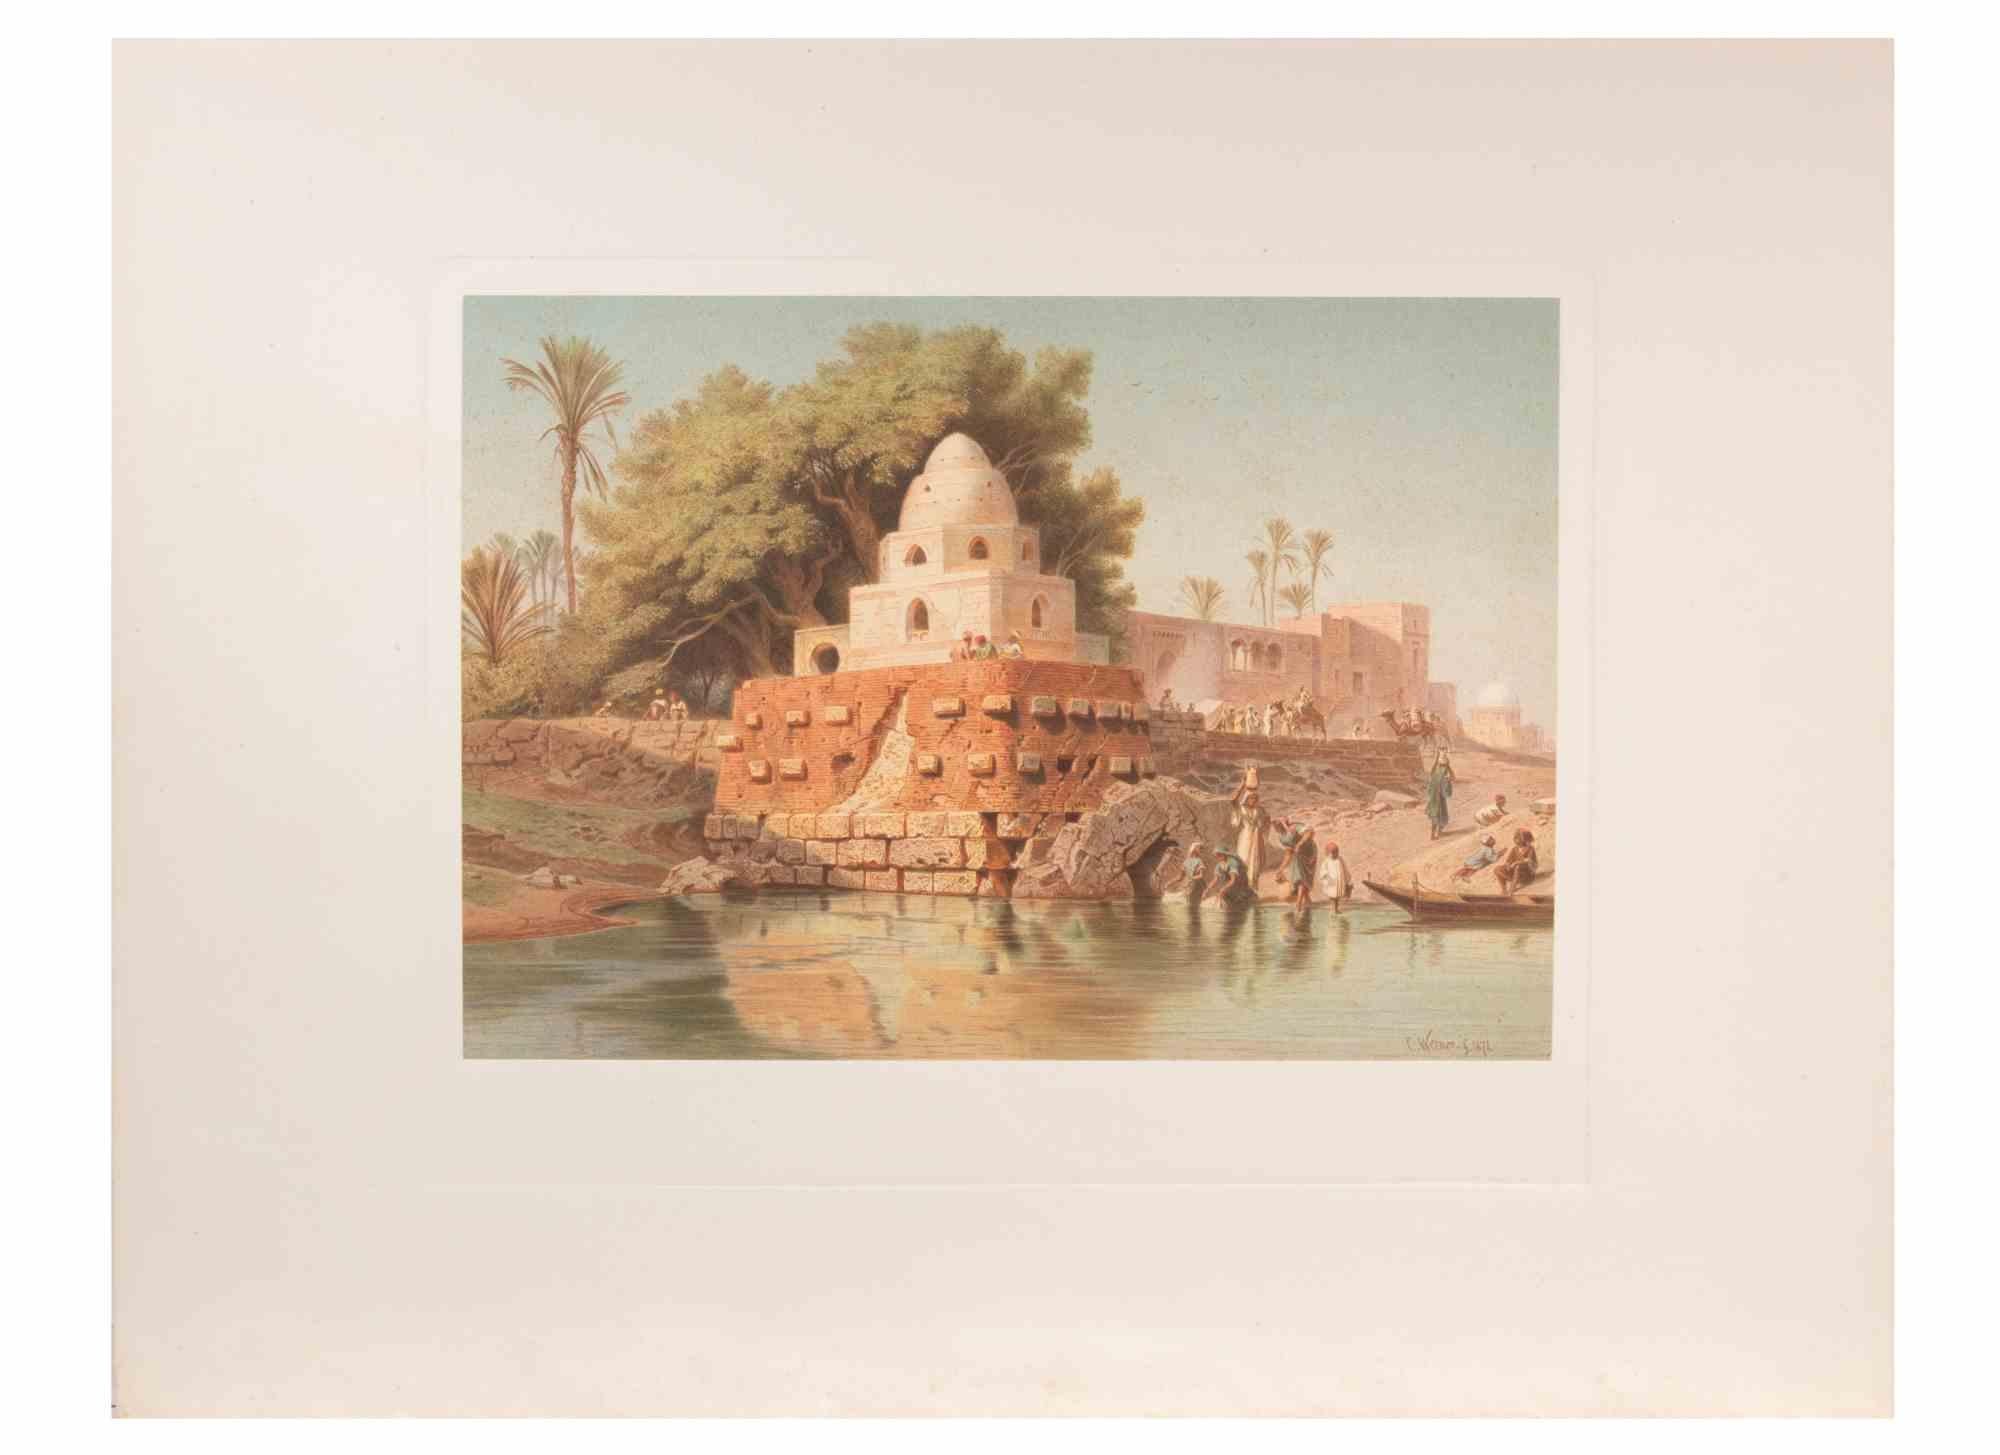 Le Minaret sur le Nil est une œuvre d'art moderne réalisée d'après Karl Werner. 

Cromolithographie en couleurs mixtes. 

L'œuvre est d'après les aquarelles réalisées par l'artiste lors d'un voyage en Égypte entre 1862 et 1865.

Cette édition date